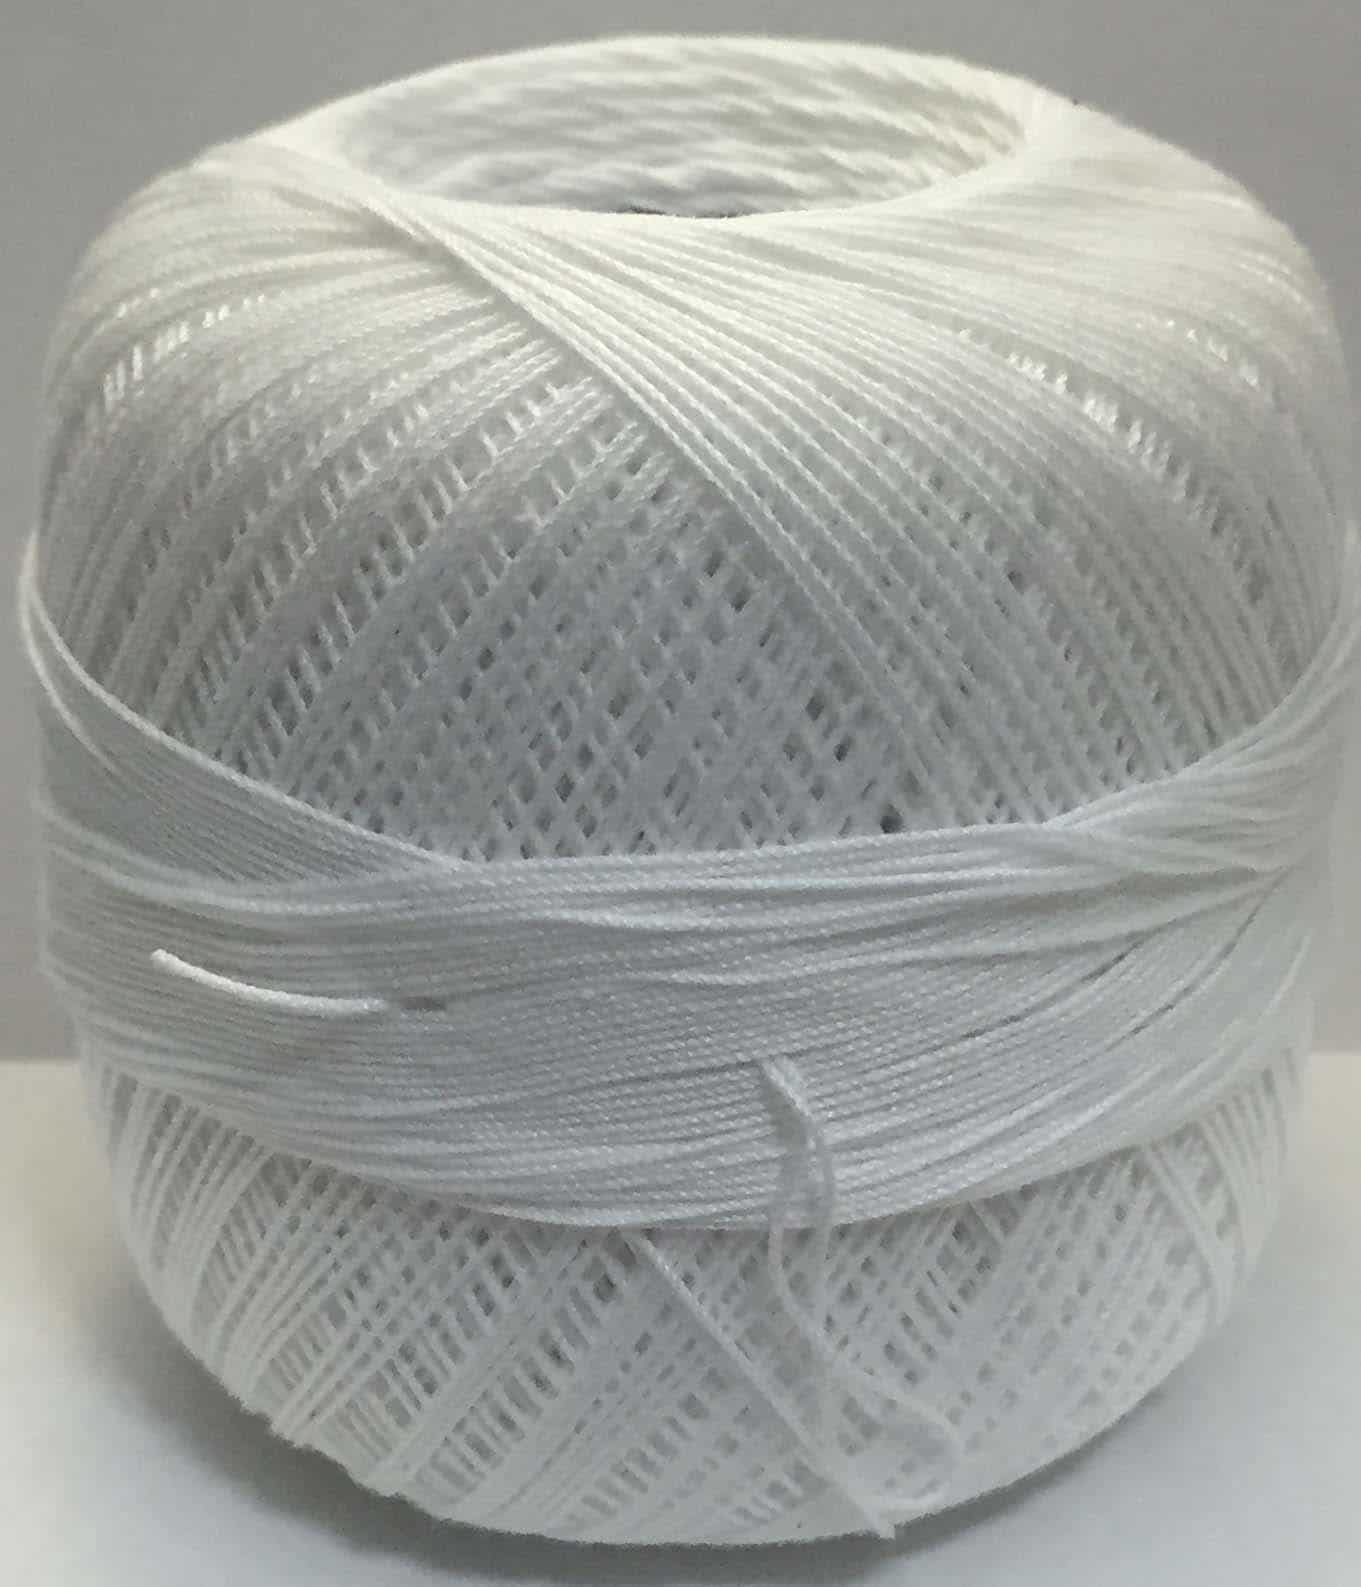 Hilos para tejer crochet y ganchillo con aguja sobre fondo blanco